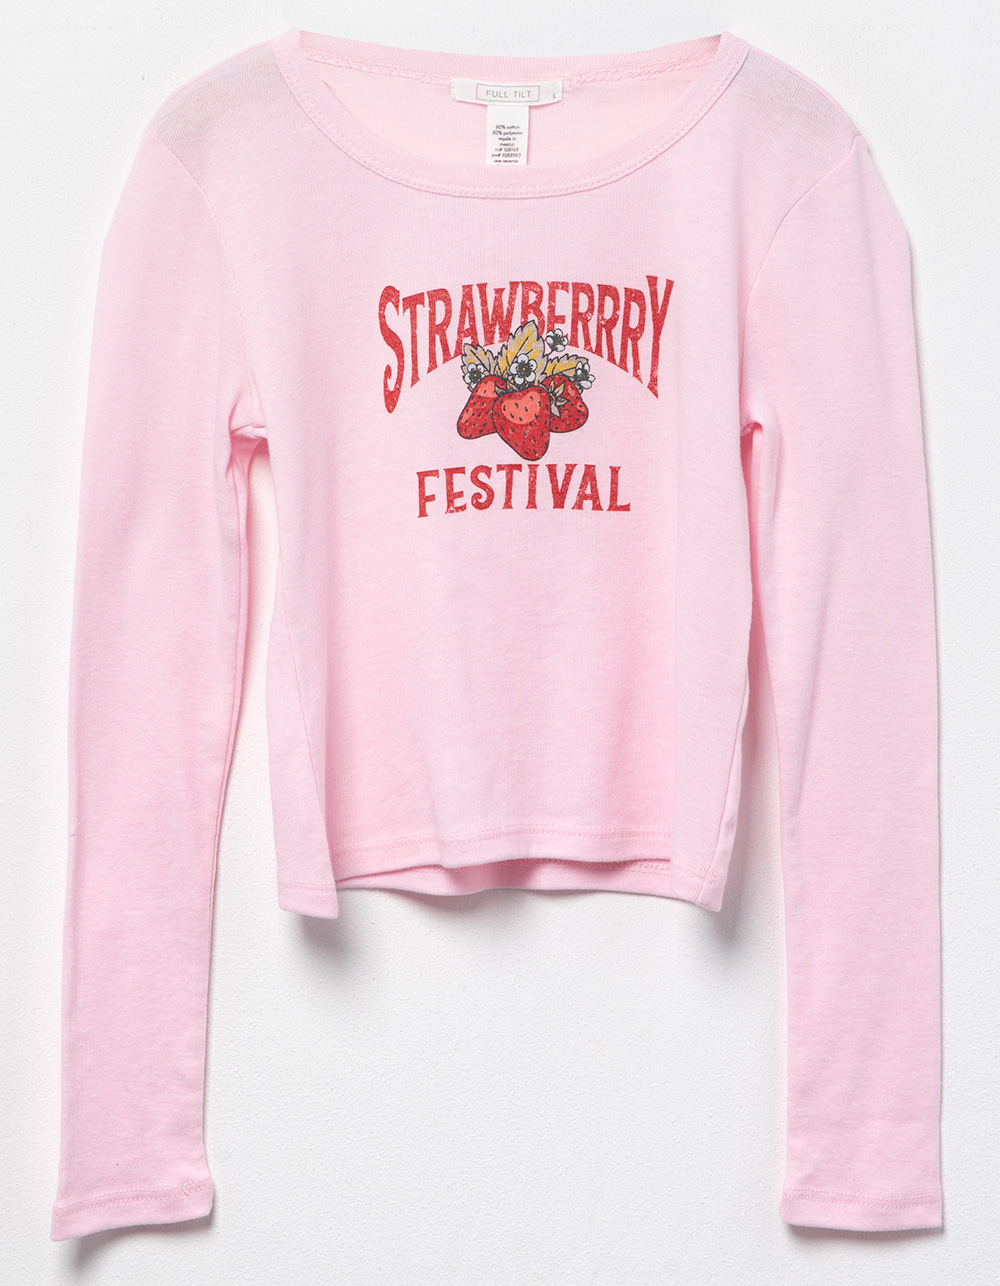 FULL TILT Strawberry Festival Girls Long Sleeve Baby Tee - LIGHT PINK |  Tillys